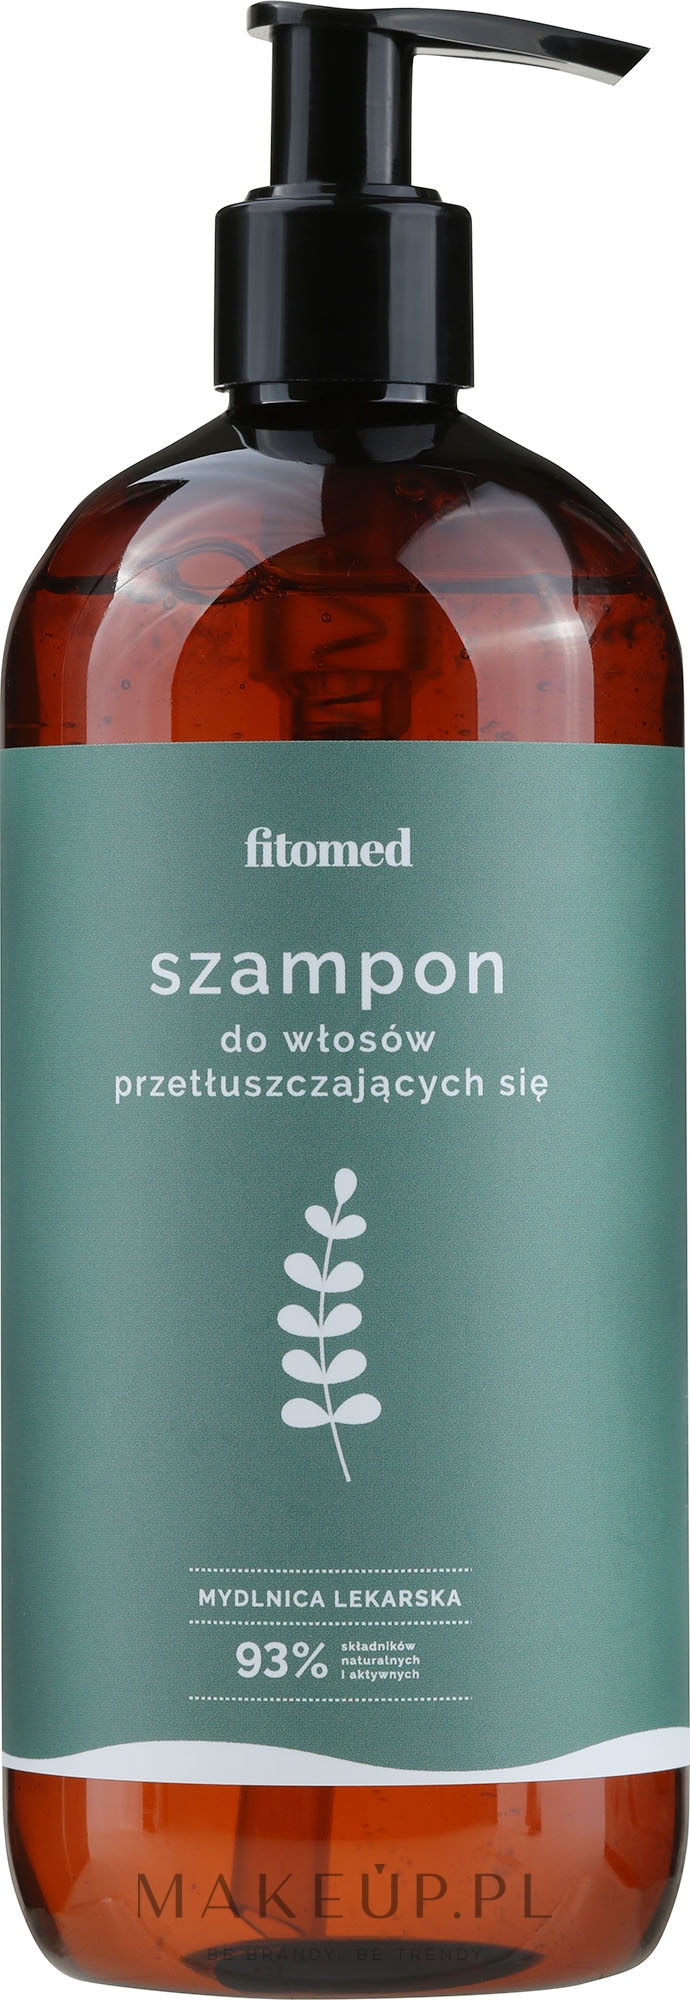 szampon do włosów przetłuszczających się mydlnica lekarska fitomed wizaz.pl